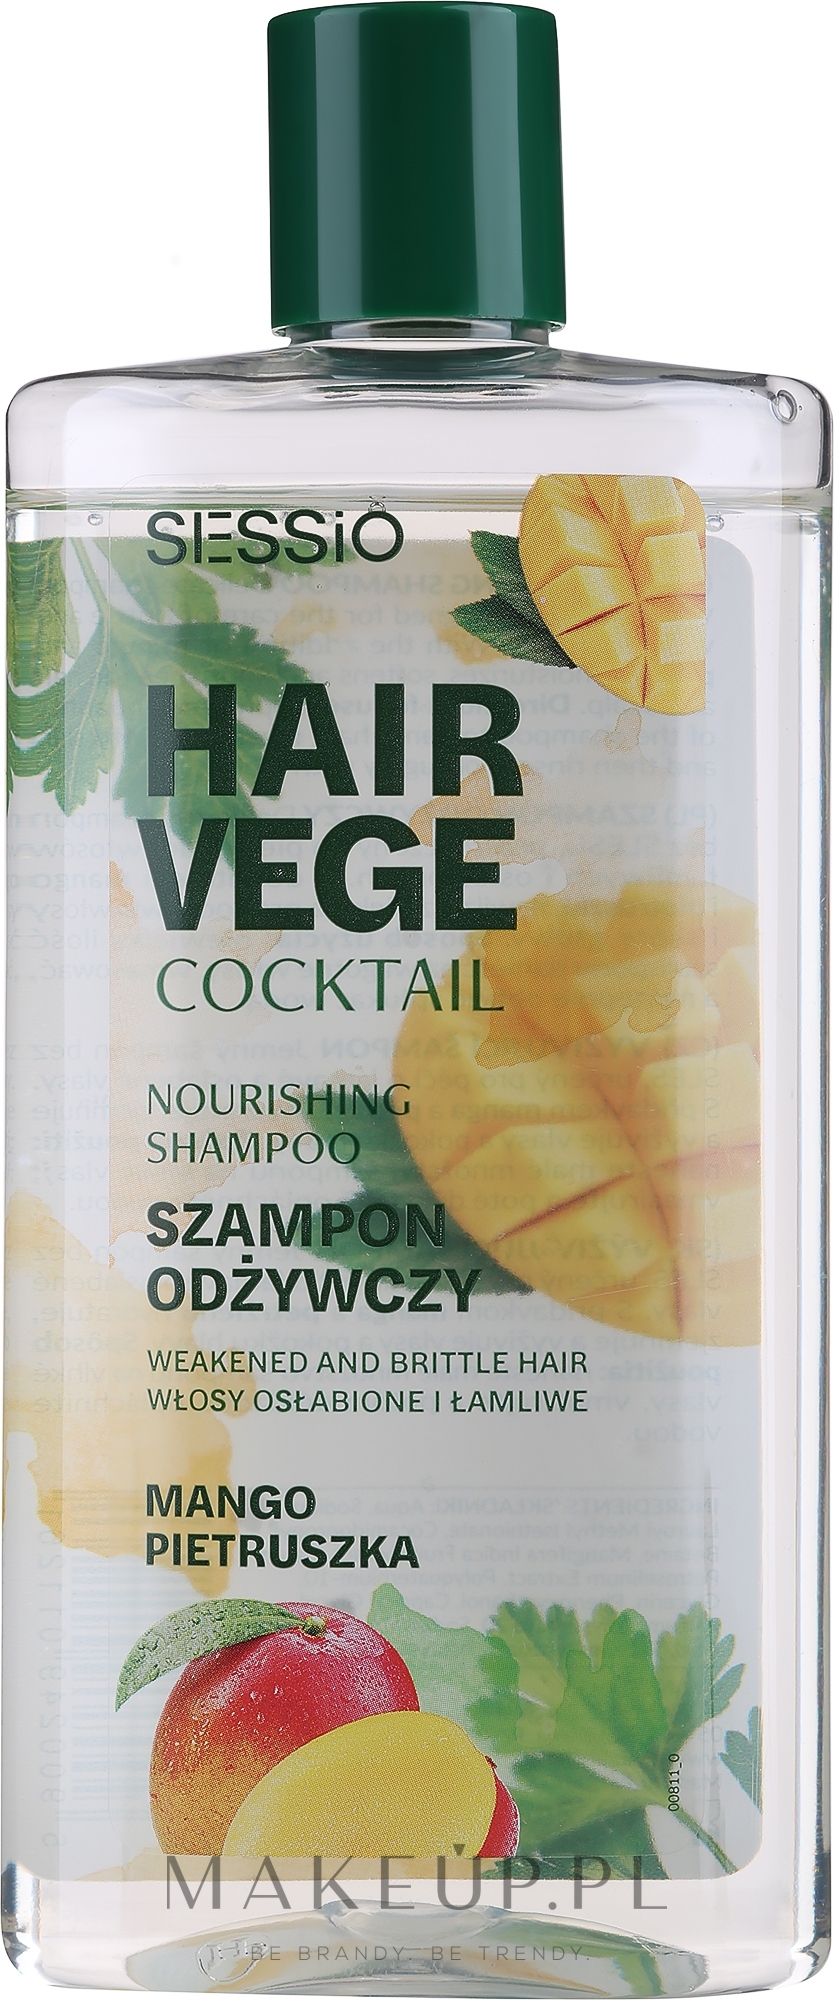 sessio hair vege cocktail odżywczy szampon do włosów mango